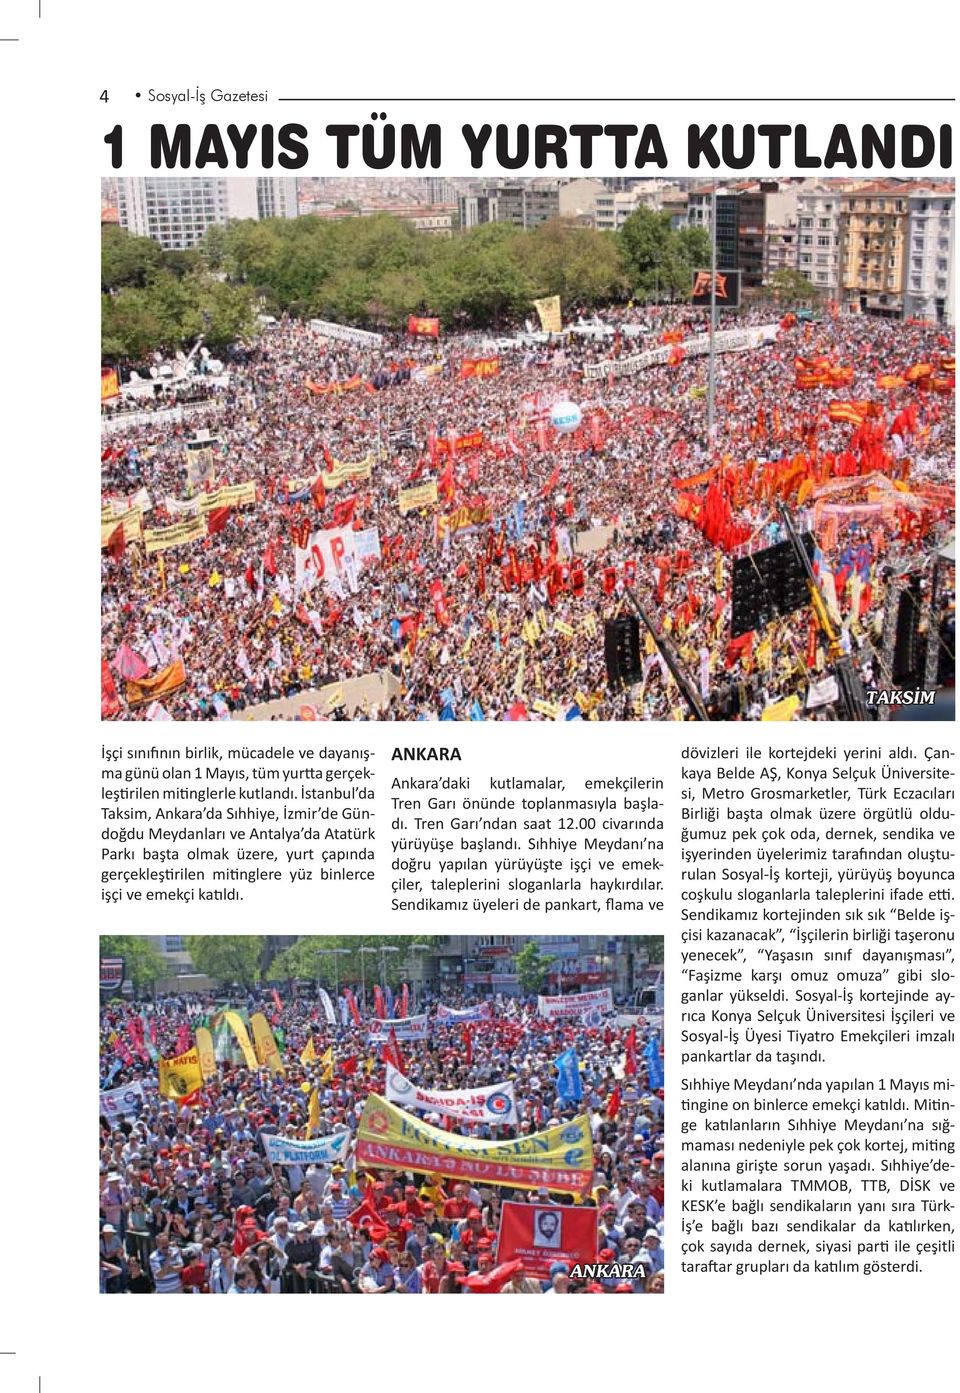 ANKARA Ankara daki kutlamalar, emekçilerin Tren Garı önünde toplanmasıyla başladı. Tren Garı ndan saat 12.00 civarında yürüyüşe başlandı.